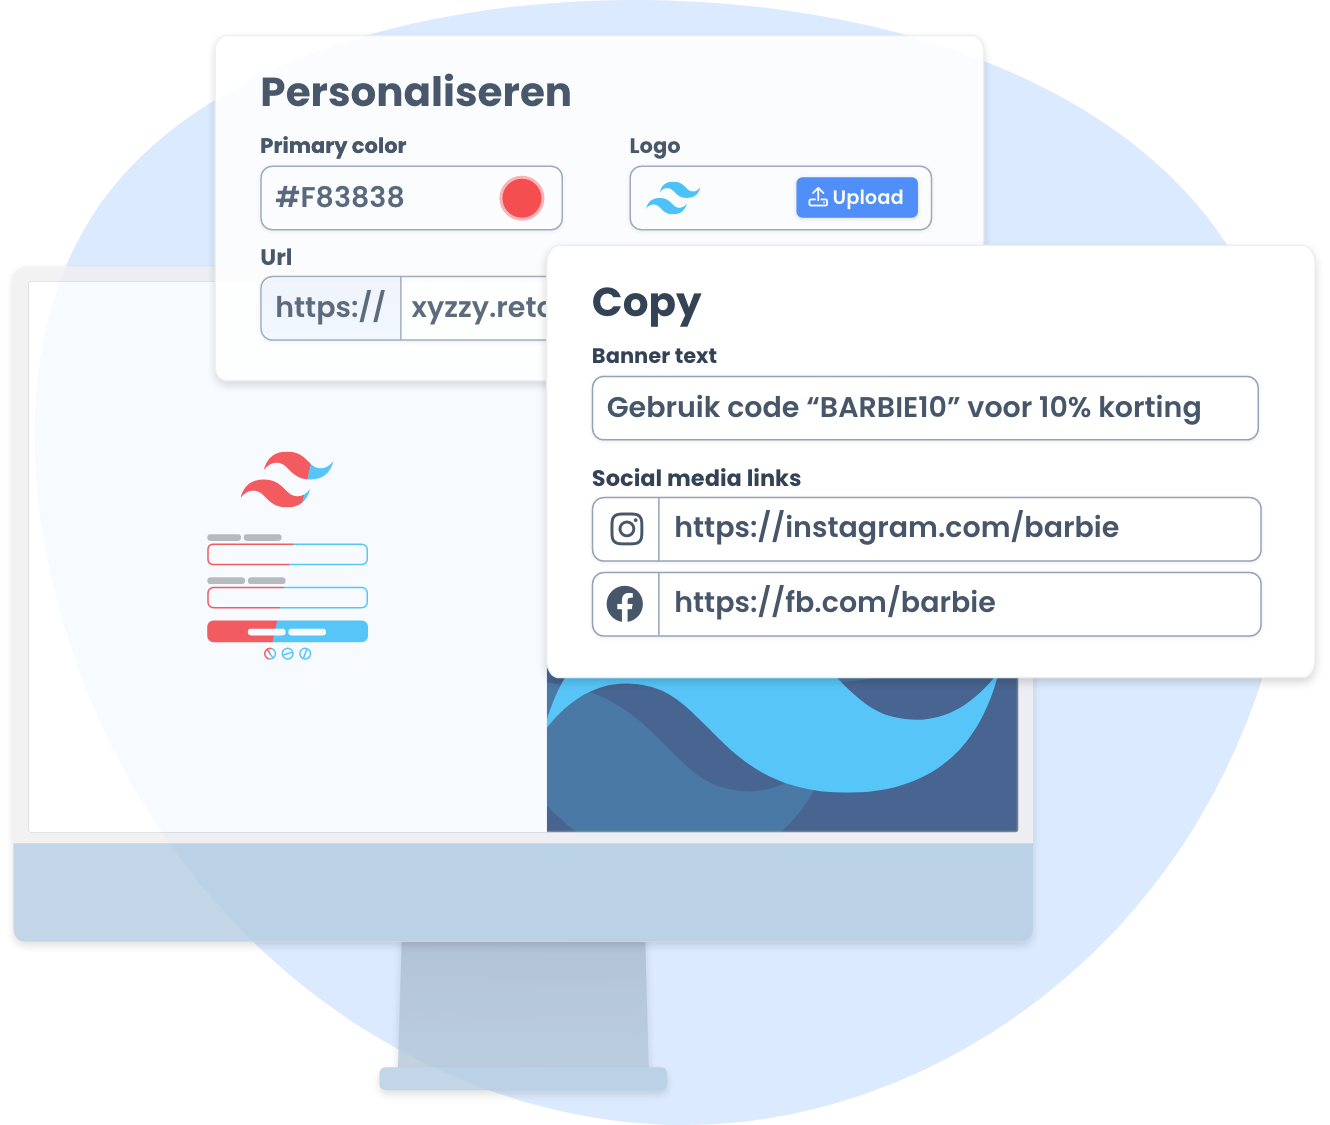 Interface voor het personaliseren van een retourportal, inclusief opties voor het aanpassen van de primaire kleur, het uploaden van een logo, en het toevoegen van sociale media links en kortingscodes.